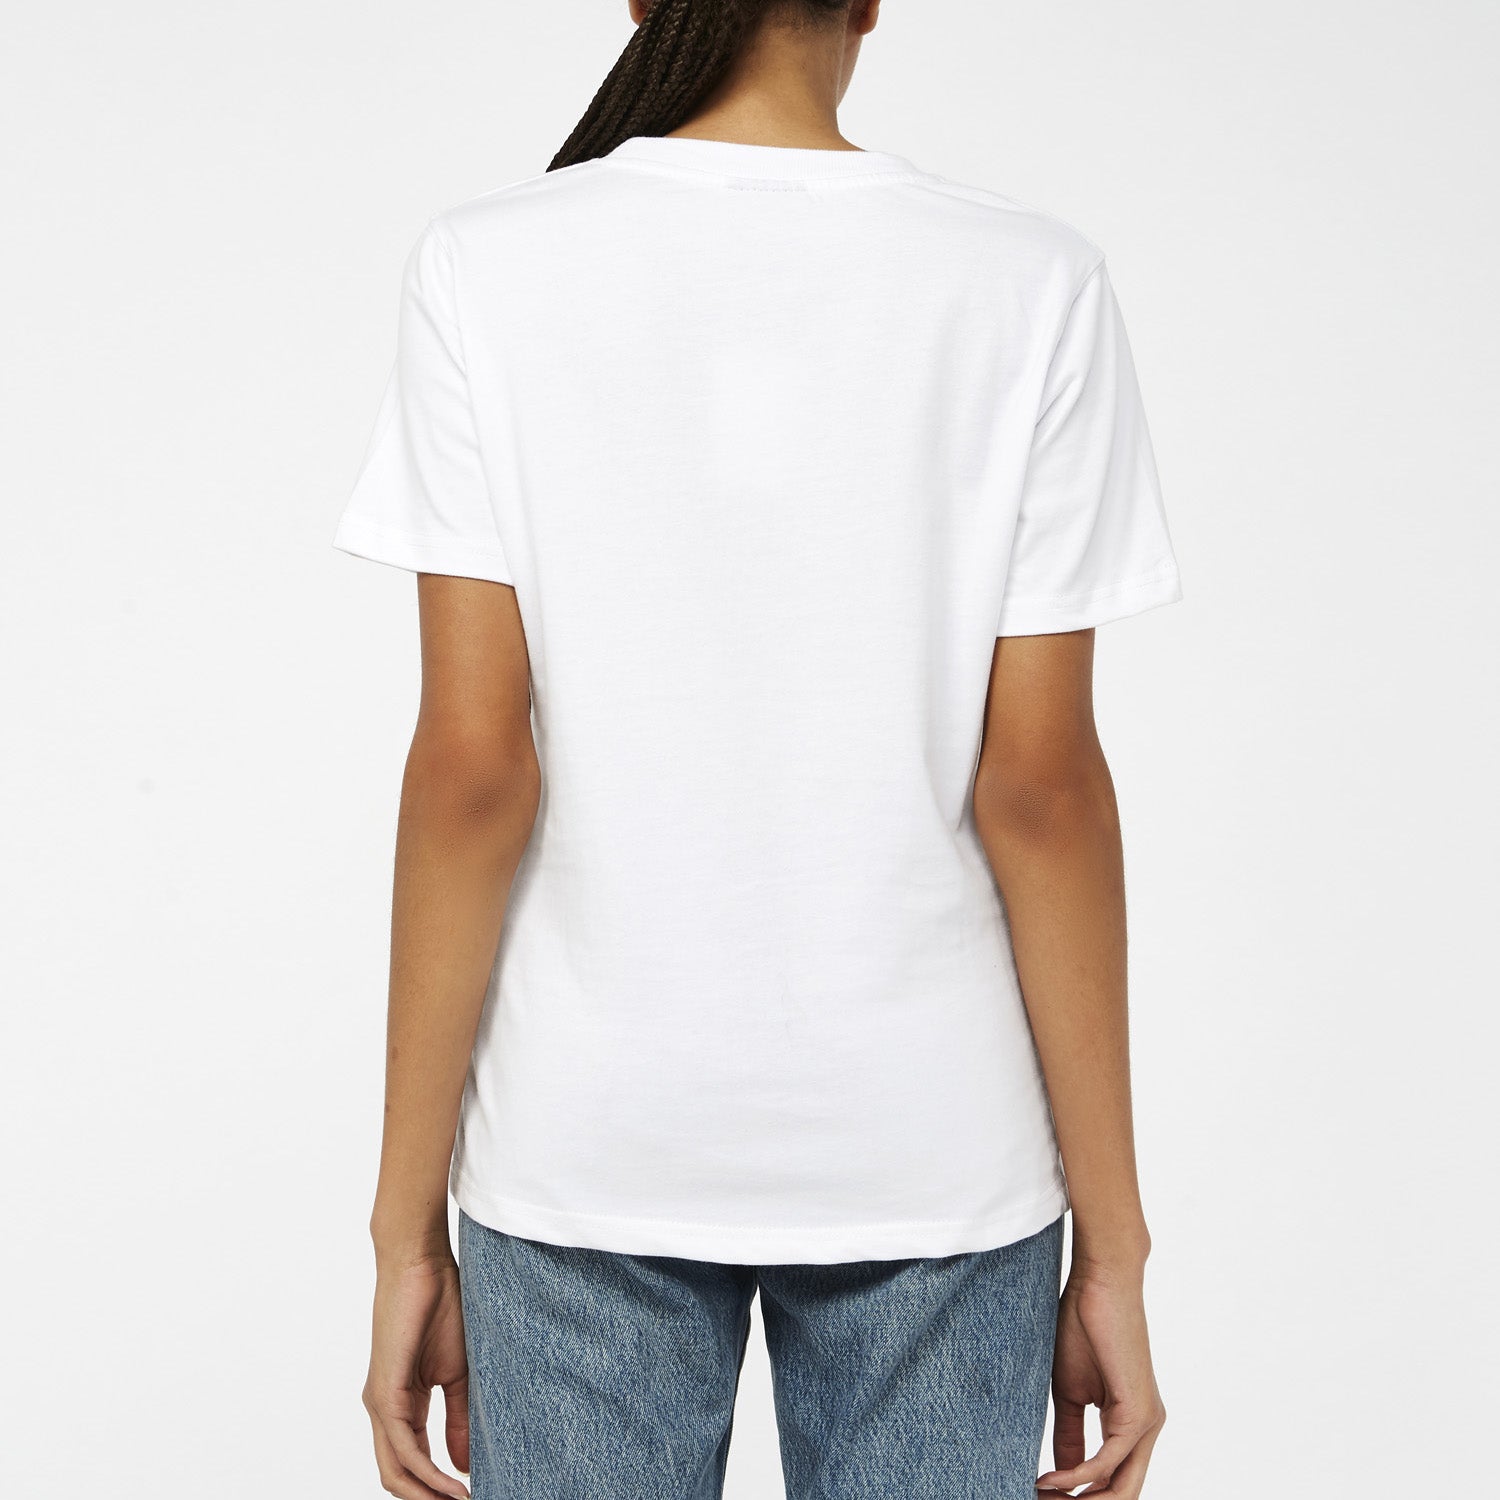 Privé Alliance Women's Motion T-shirt White